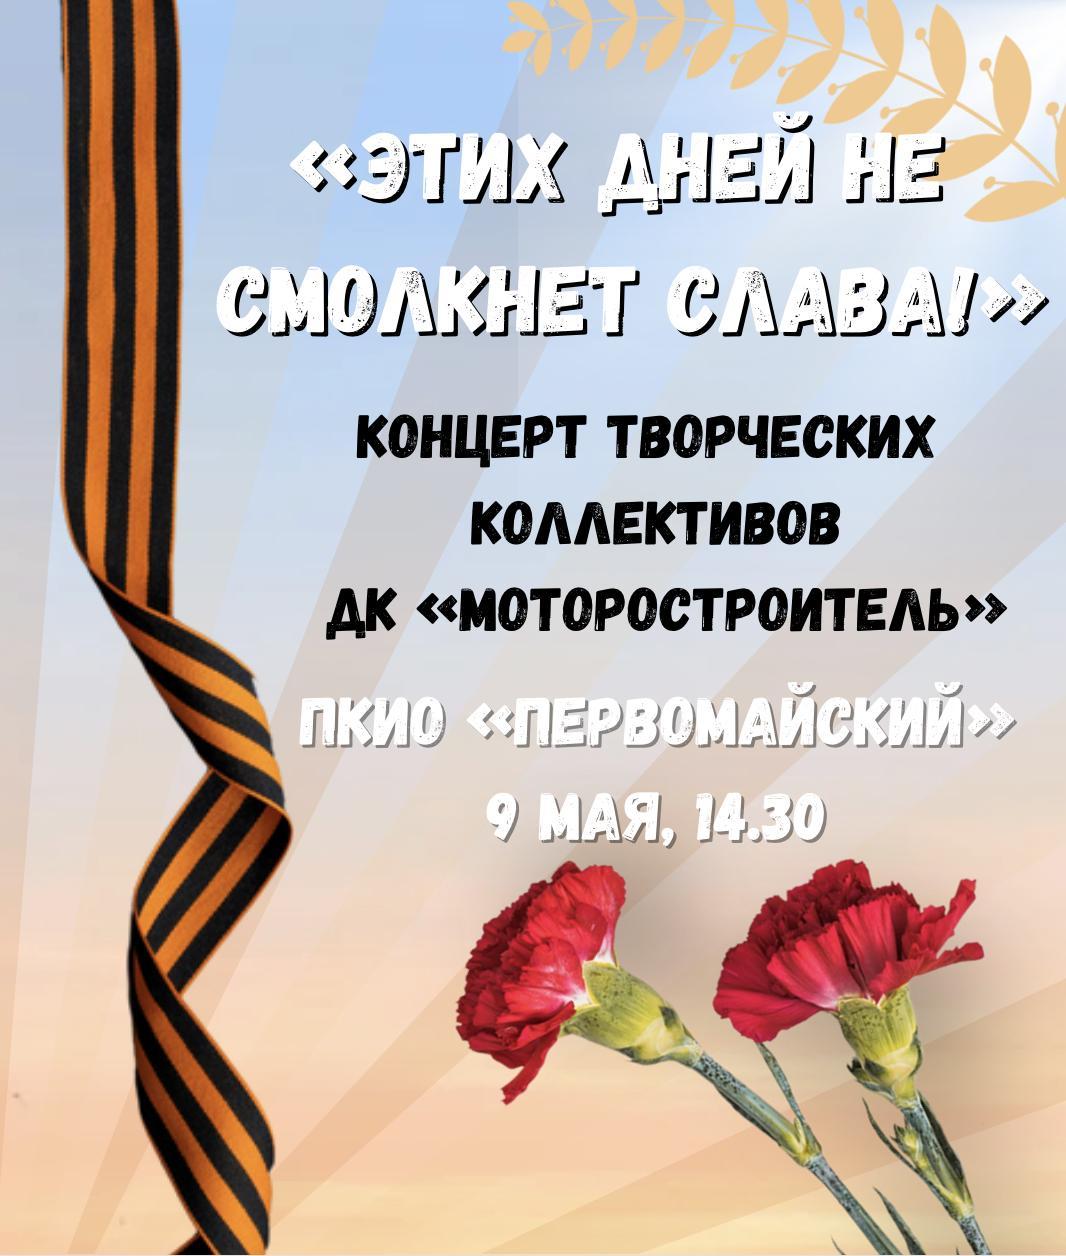 9 мая в ПКиО «Первомайский» пройдёт праздничный концерт «Этих дней не смолкнет слава!» 